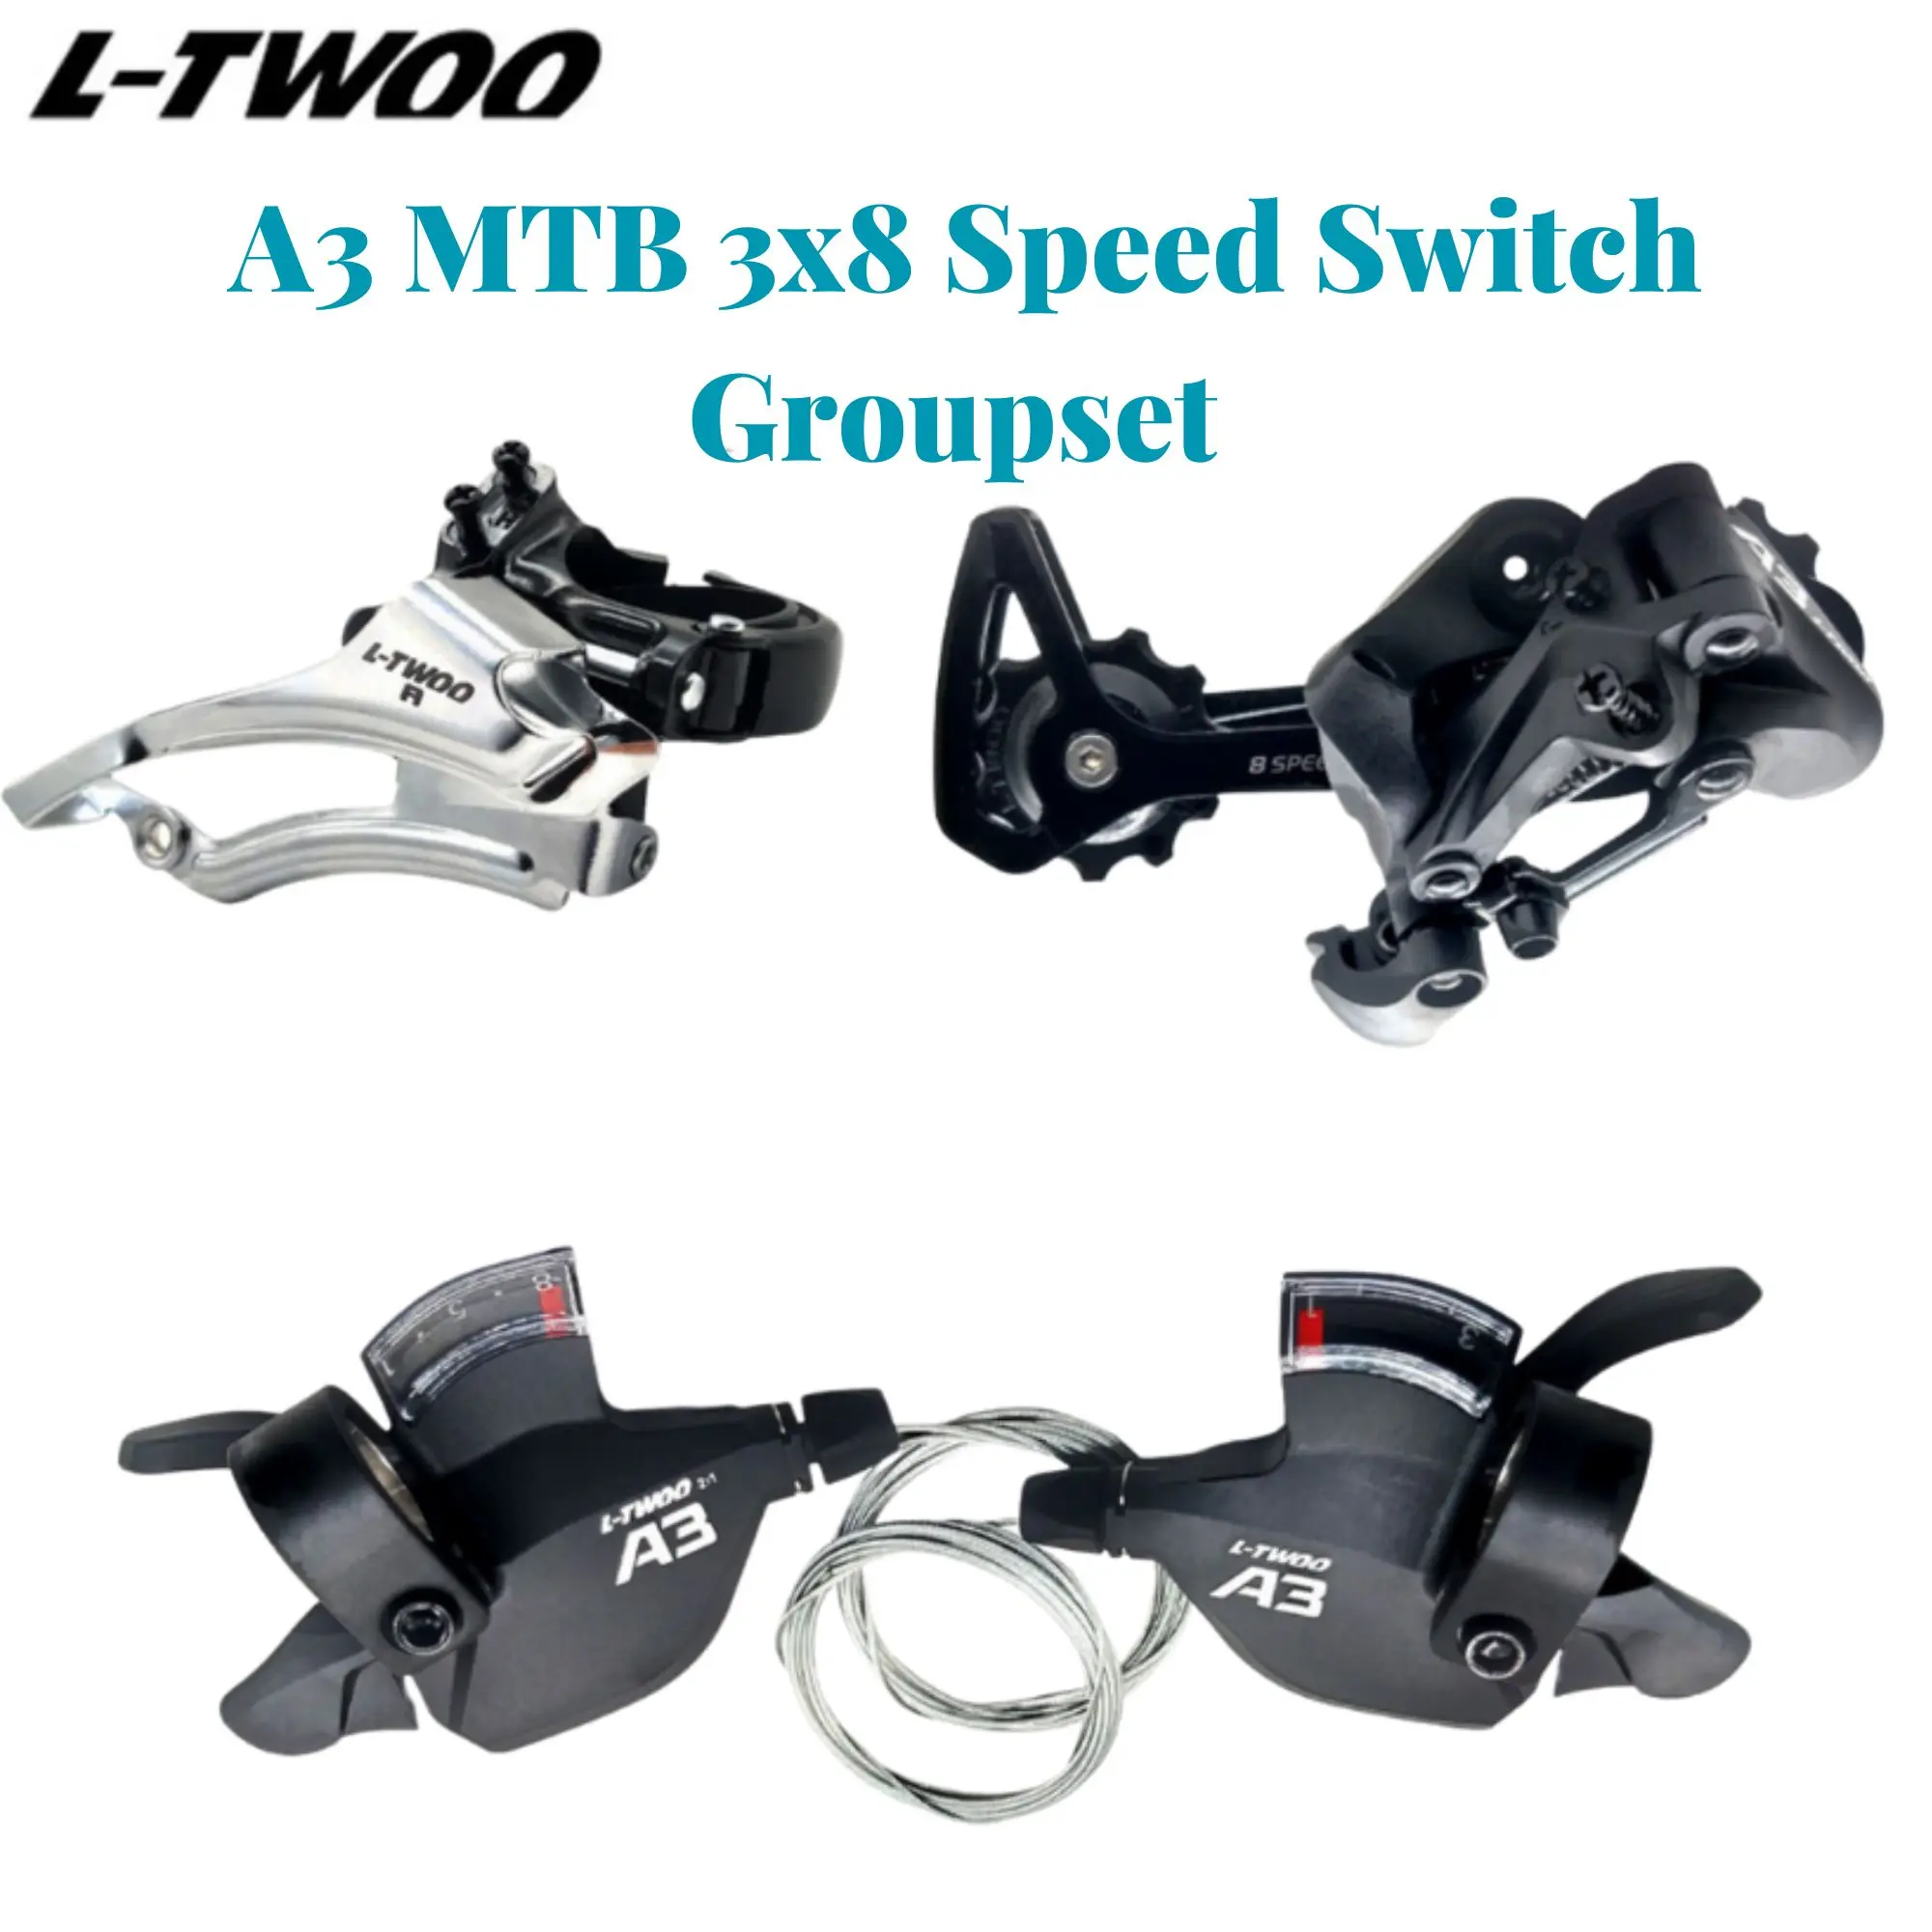 

LTWOO A3 3X8 24 скоростные переключатели, групповой набор, совместимый для Shimano 8 скоростной переключатель передач, рычаг переключения передач, передний переключатель передач, 8 скоростей, велосипедные детали